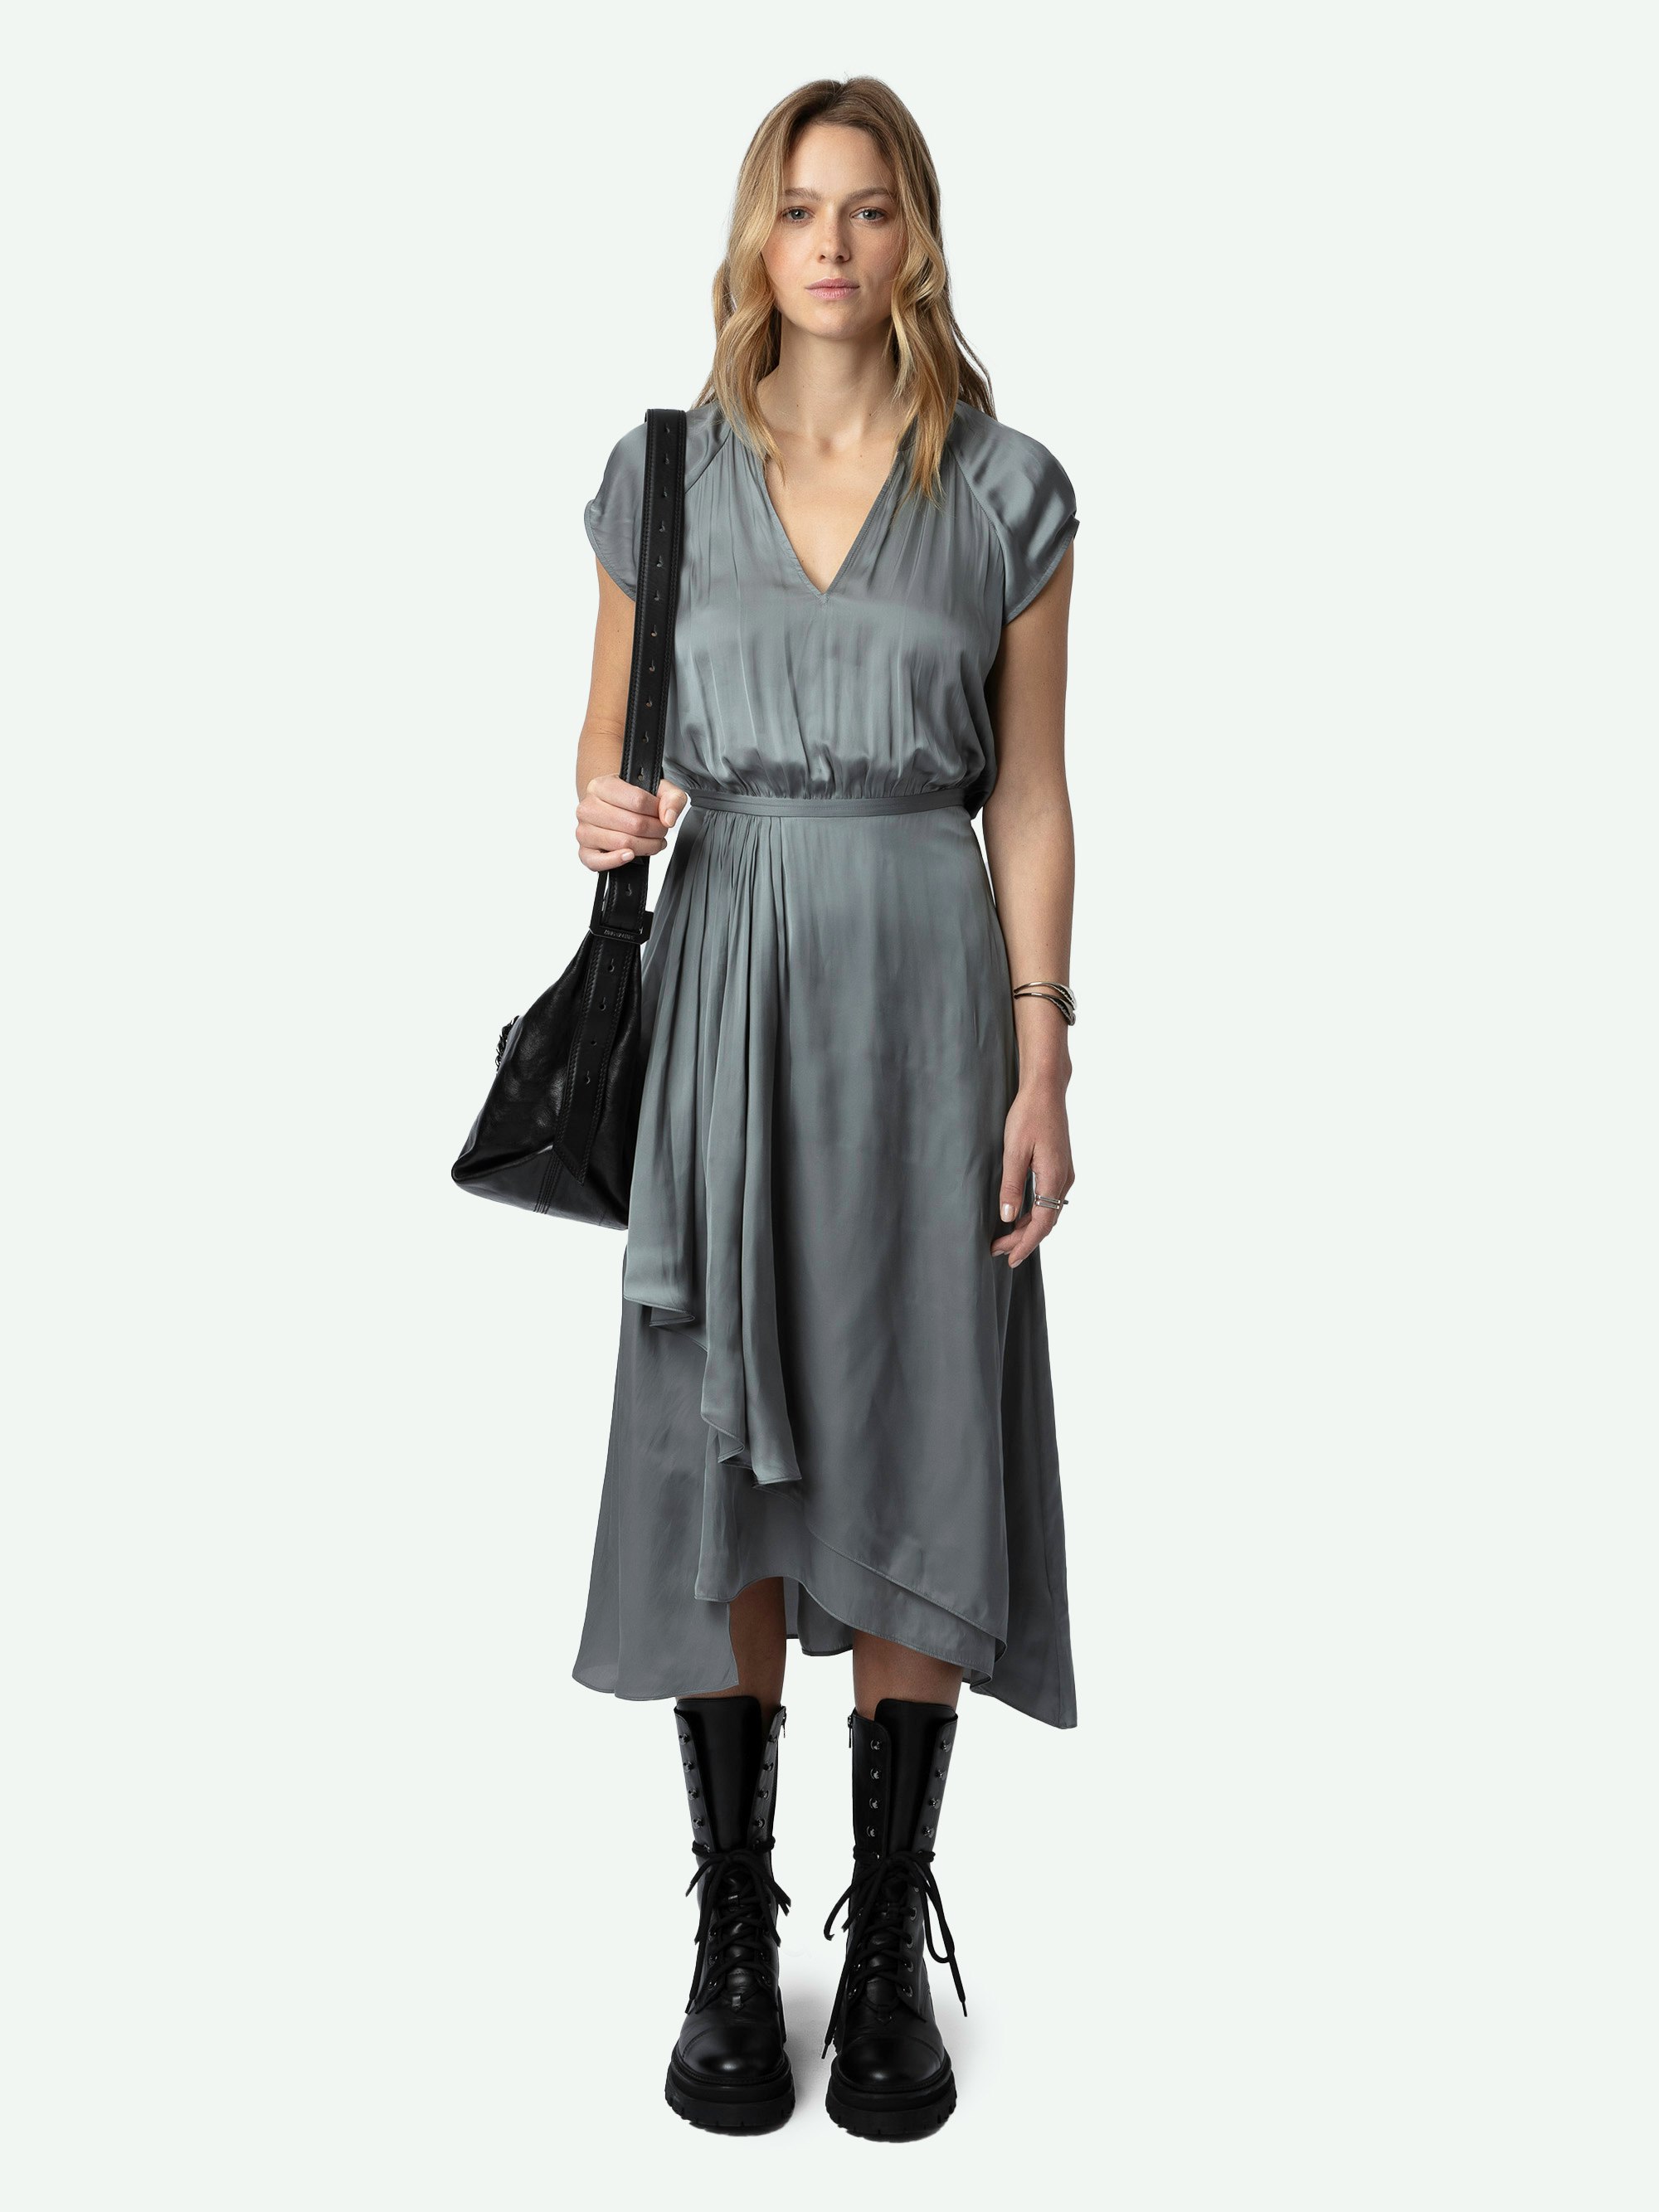 Kleid Randall Satin - Halblanges, graues Satinkleid mit kurzen Raglanärmeln und Rockteil mit asymmetrischem gerüschtem Schoß.